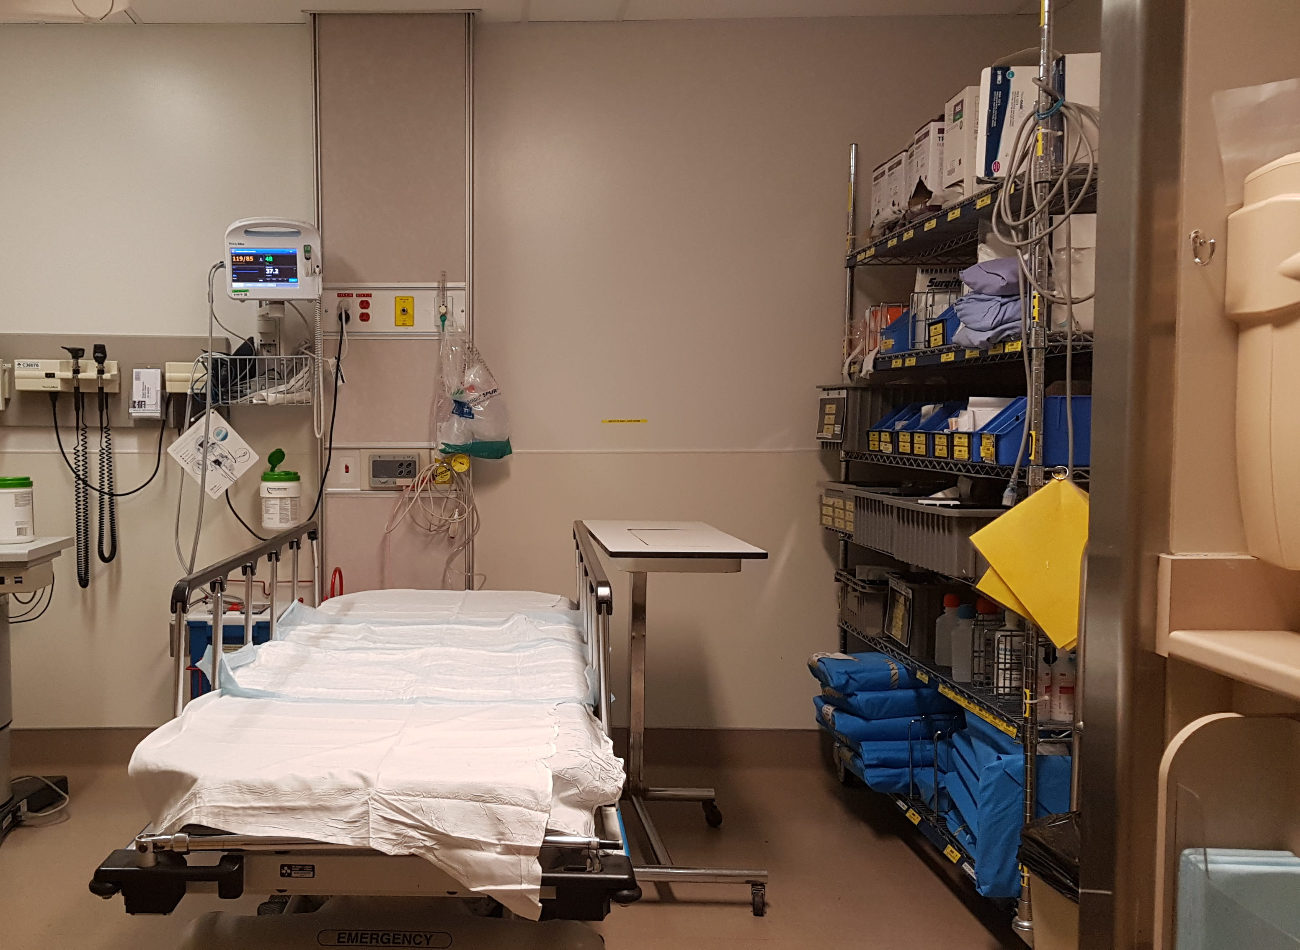 Un lit d'hôpital vide. Autour se trouvent de nombreuses machines médicales.